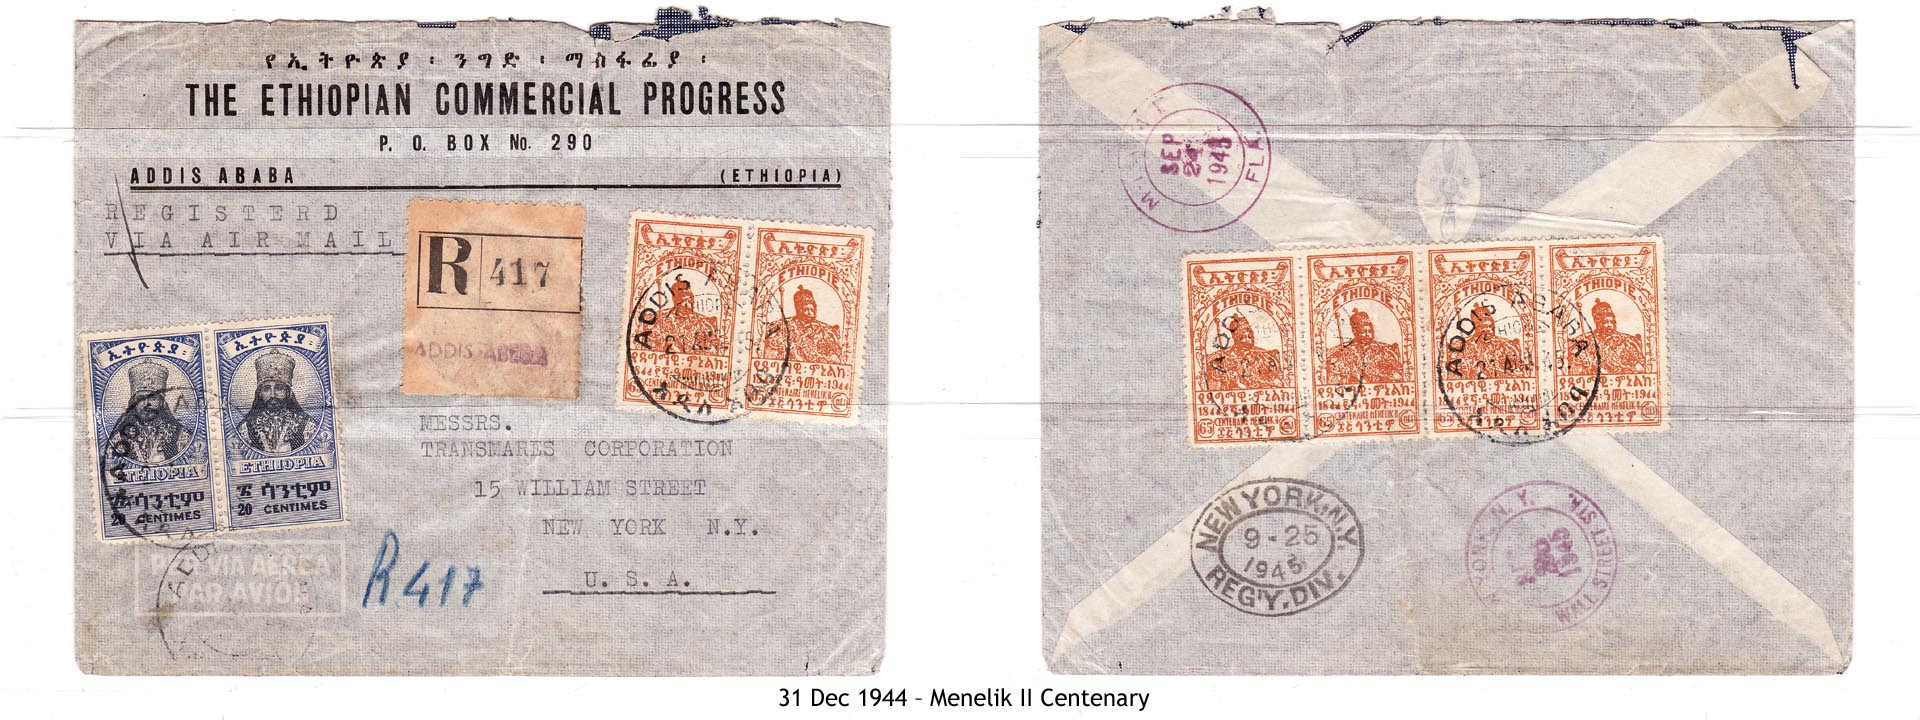 19441231 – Menelik II Centenary